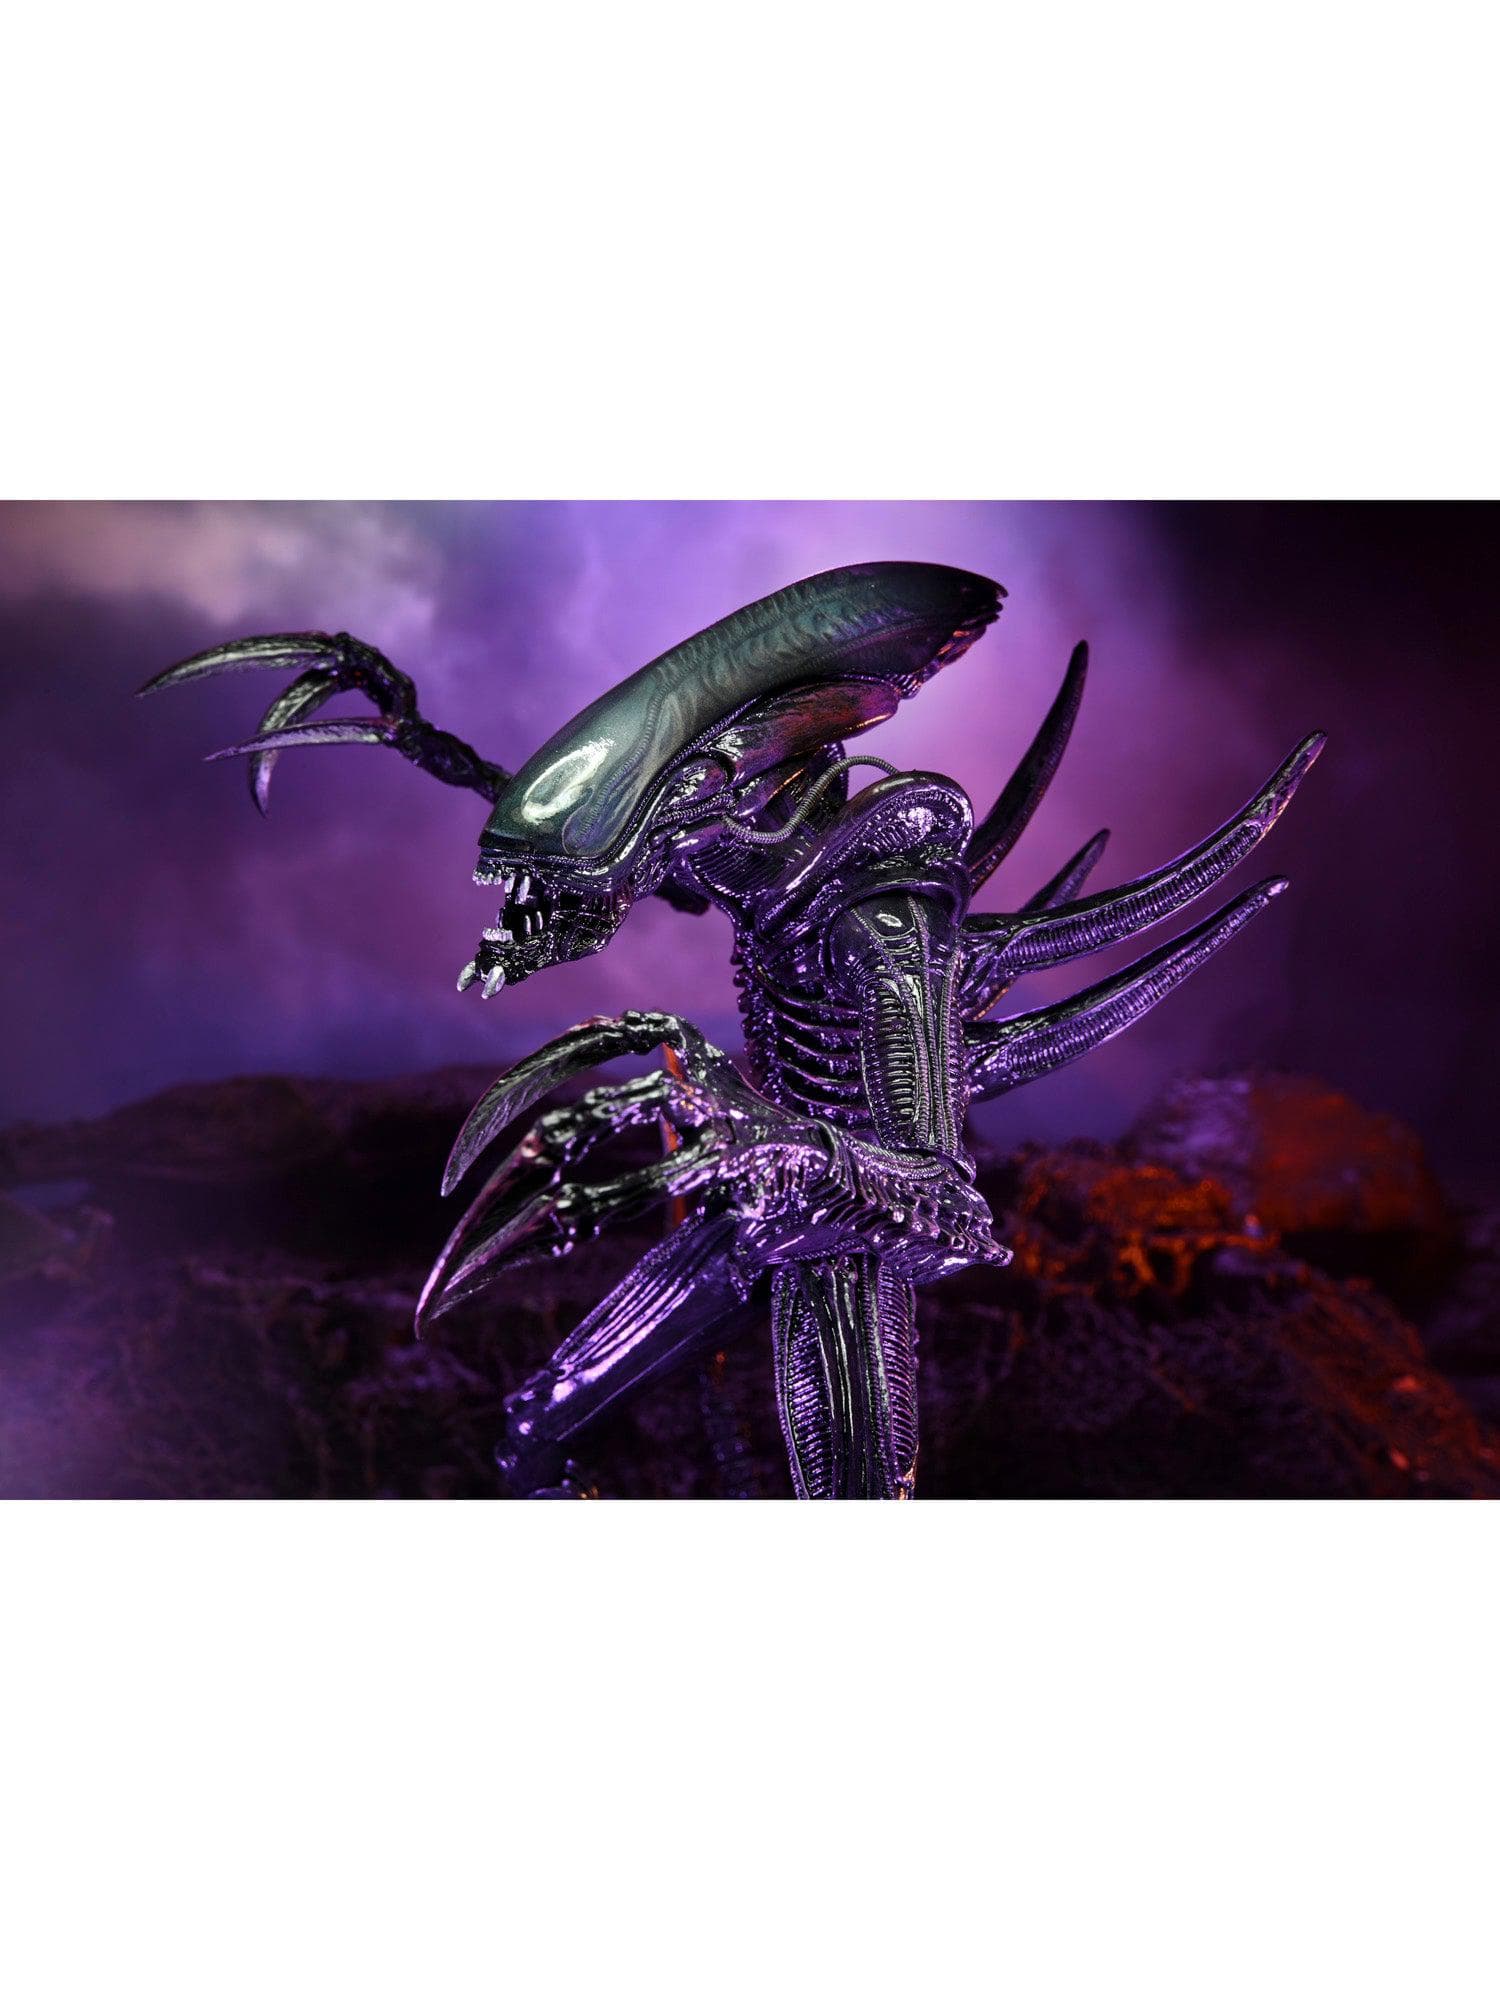 NECA - Alien vs Predator - 7" Scale Action Figure - Razor Claws Alien (Movie Deco) - costumes.com